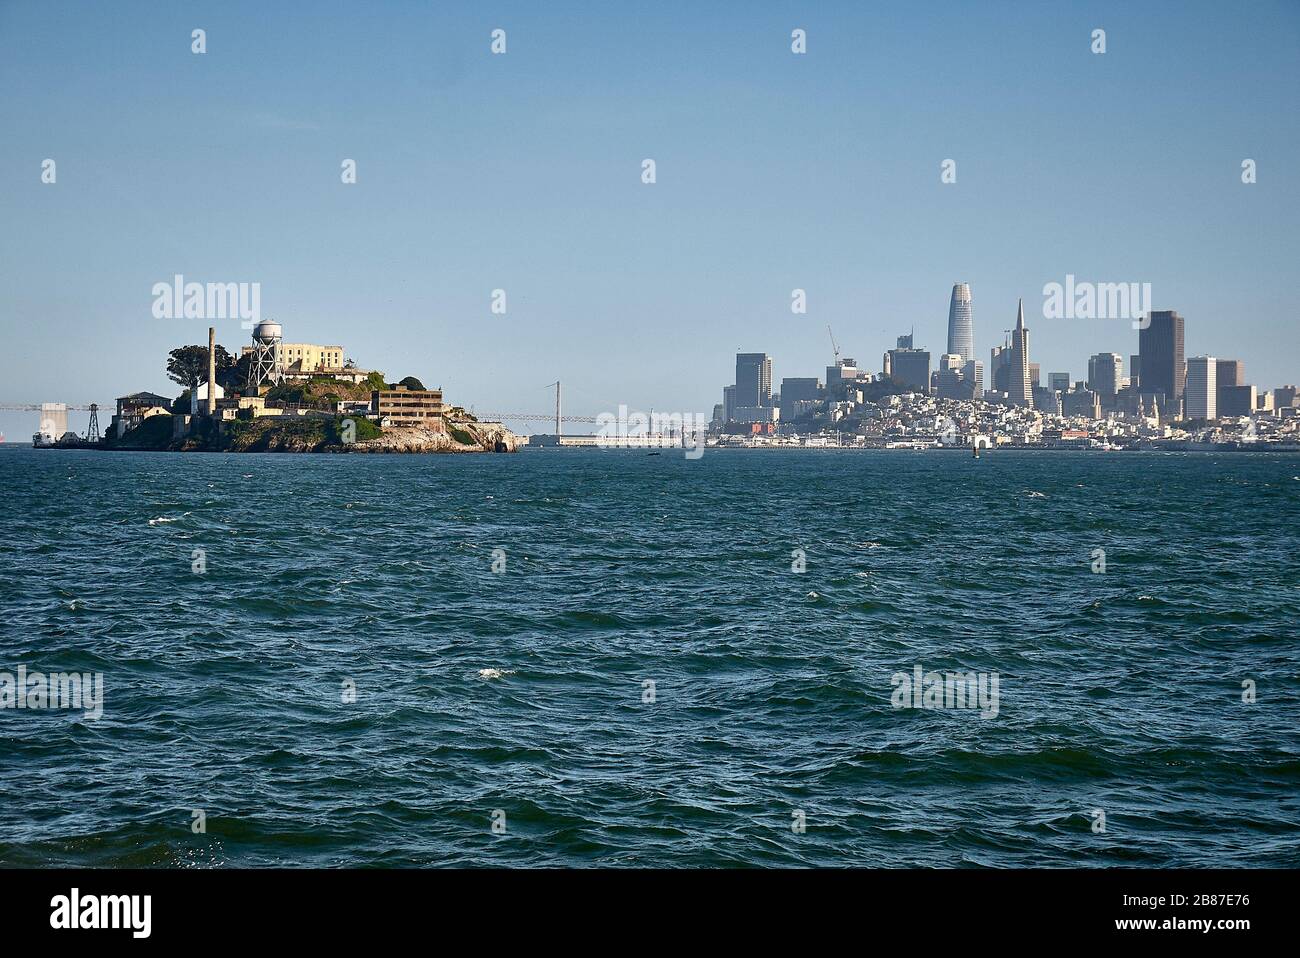 Das Gefängnis von Alcatraz Island vor der Skyline von San Francisco. Stockfoto